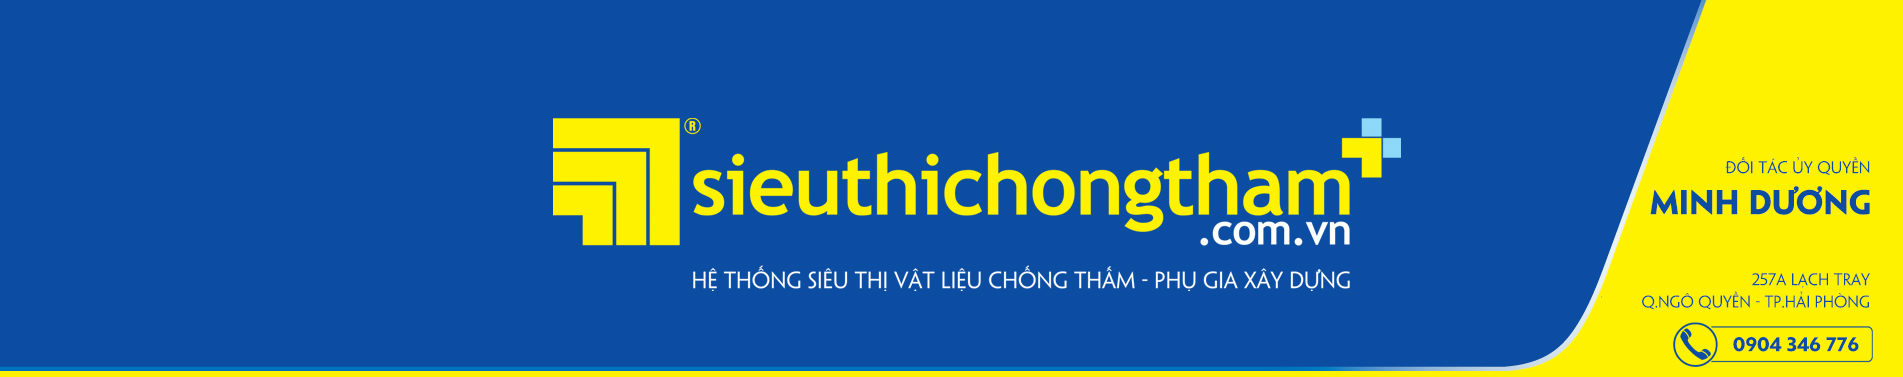 Minh Duong Banner